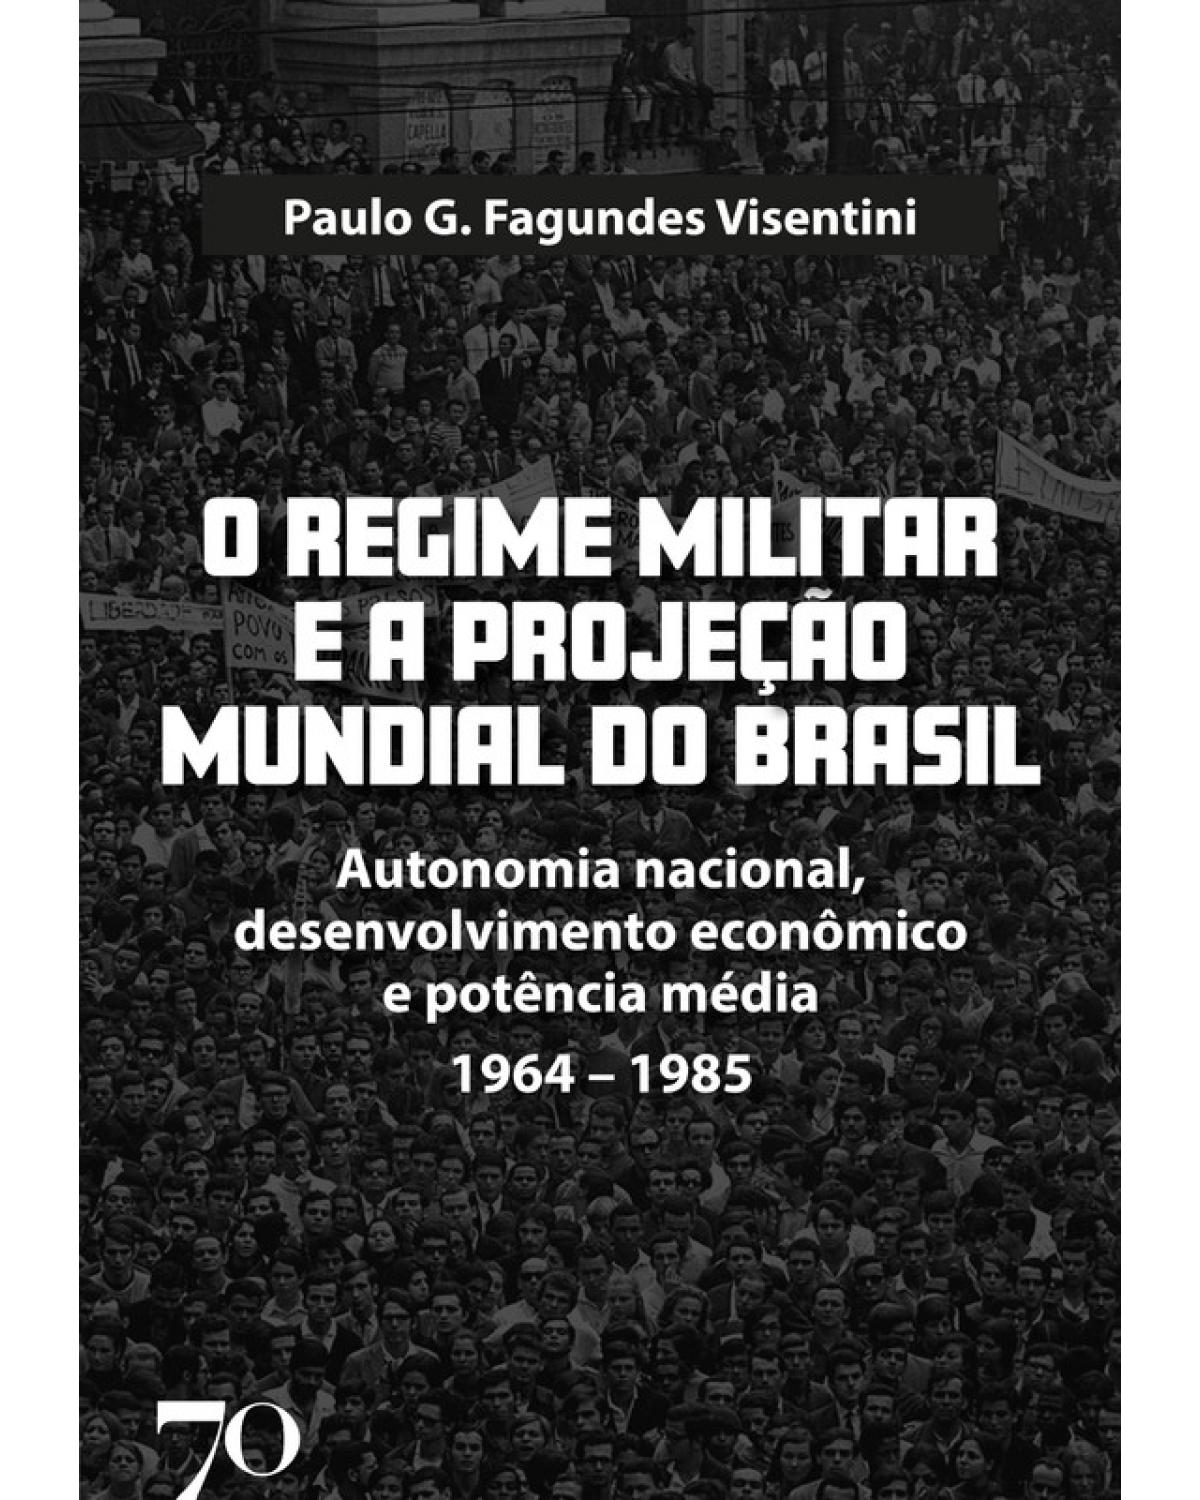 O regime militar e a projeção mundial do Brasil - autonomia nacional, desenvolvimento econômico e potência média - 1964-1985 - 1ª Edição | 2020